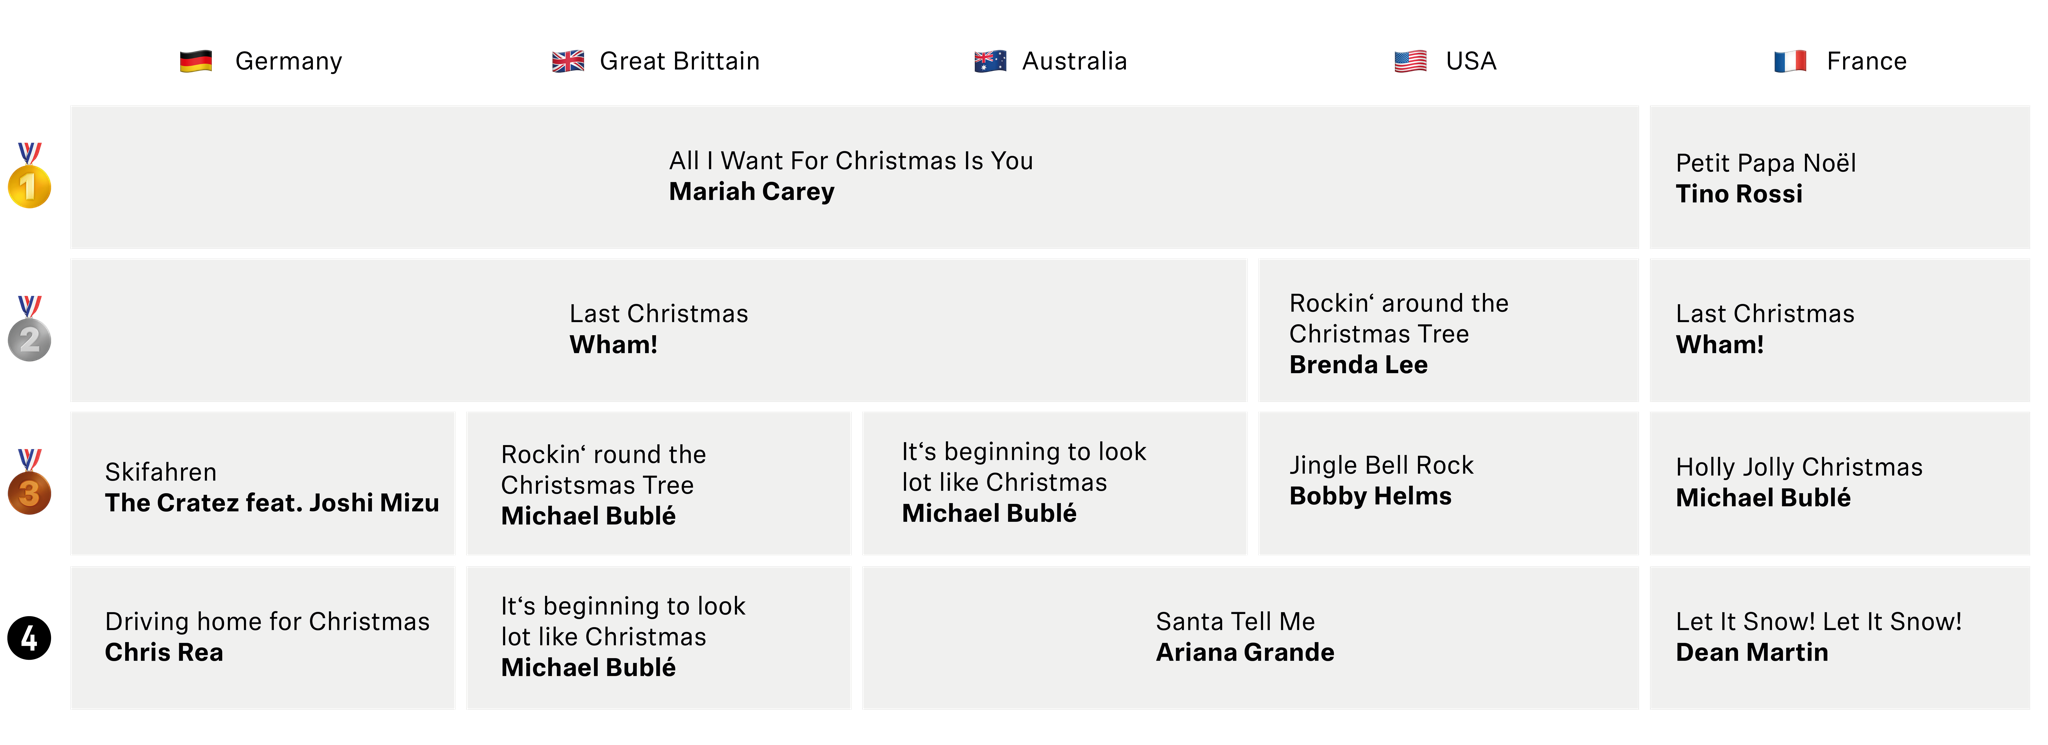 Le top 4 ​ des chants de Noël sur Spotify en 2019